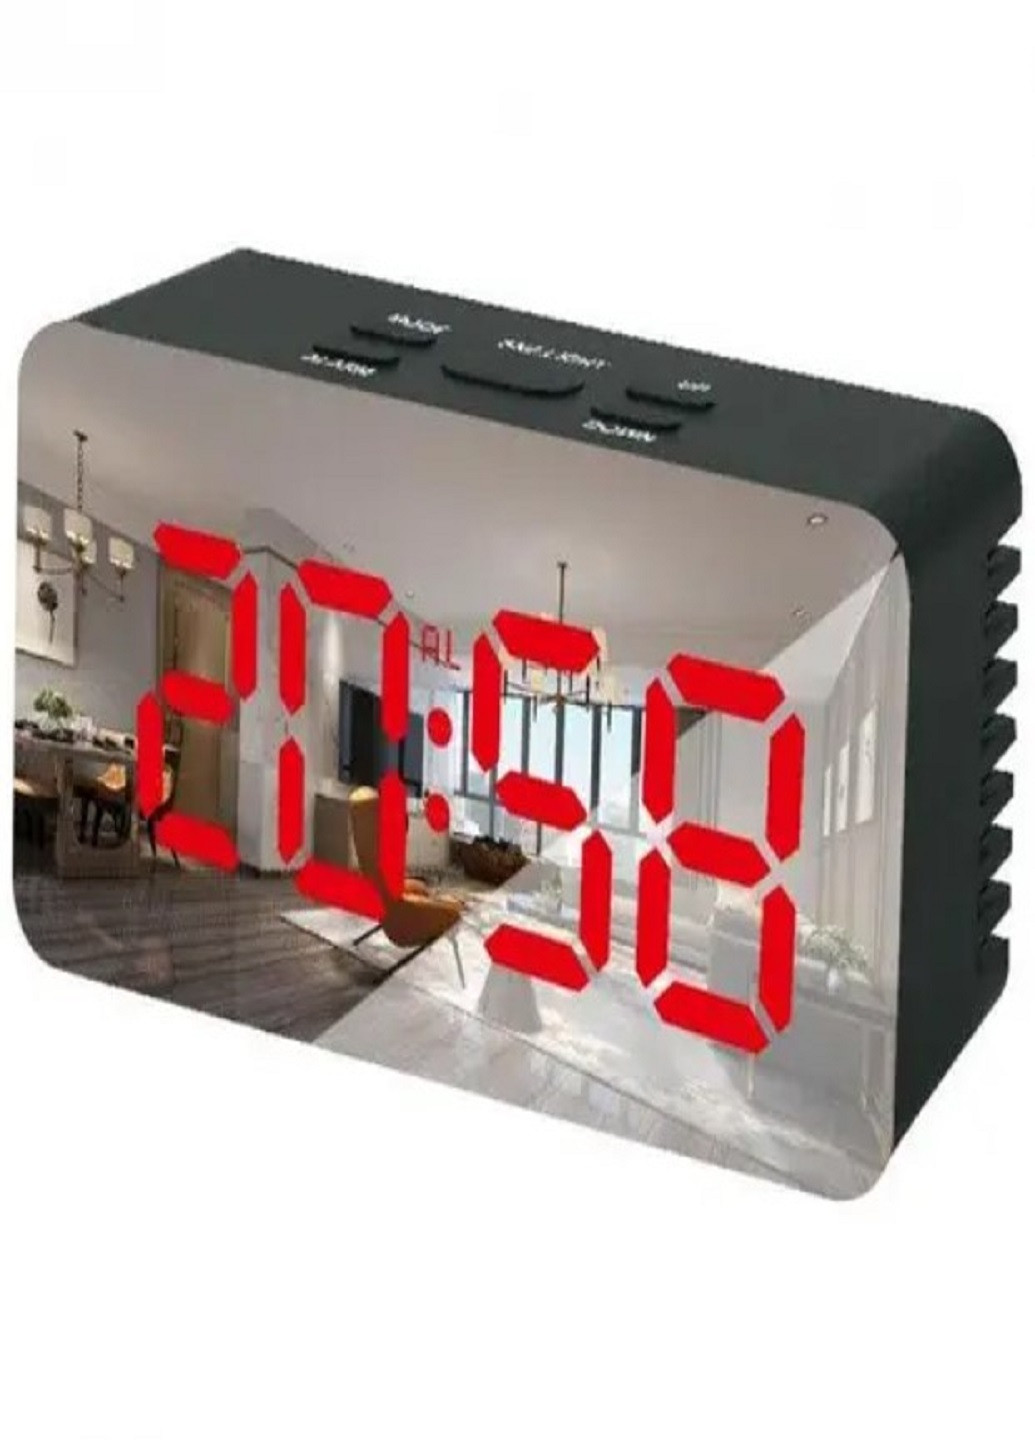 Настільний електронний годинник з підсвіткою і живленням від мережі 220В або батарейок DS-3658 Чорний корпус Червона підсвітка VTech (263360257)